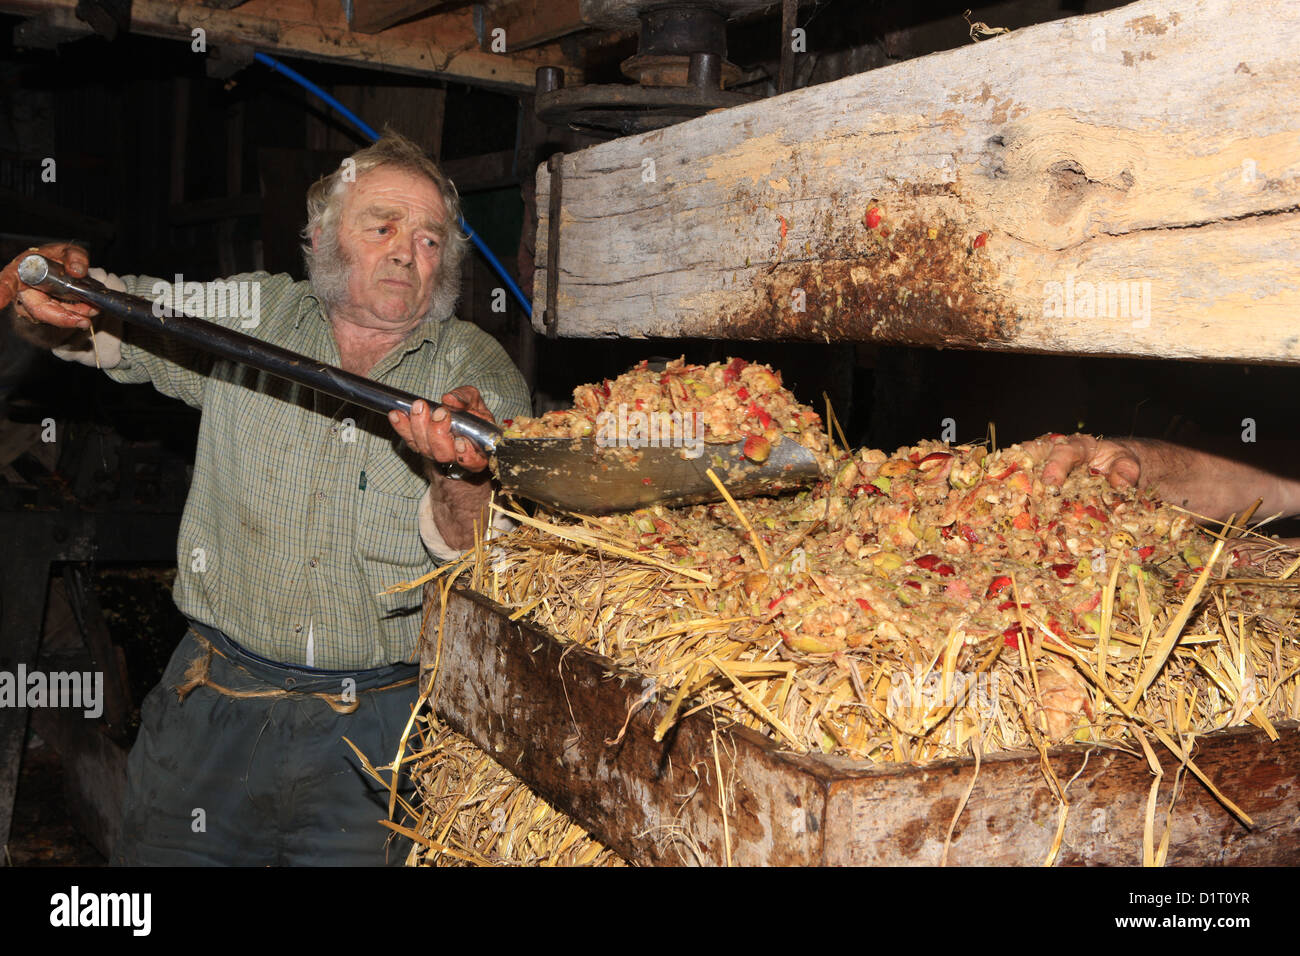 Roger Parris faire cidre traditionnel de Devon un 200 ans, à l'aide de la paille pour tenir la pomme hachée dans le fromage. Banque D'Images